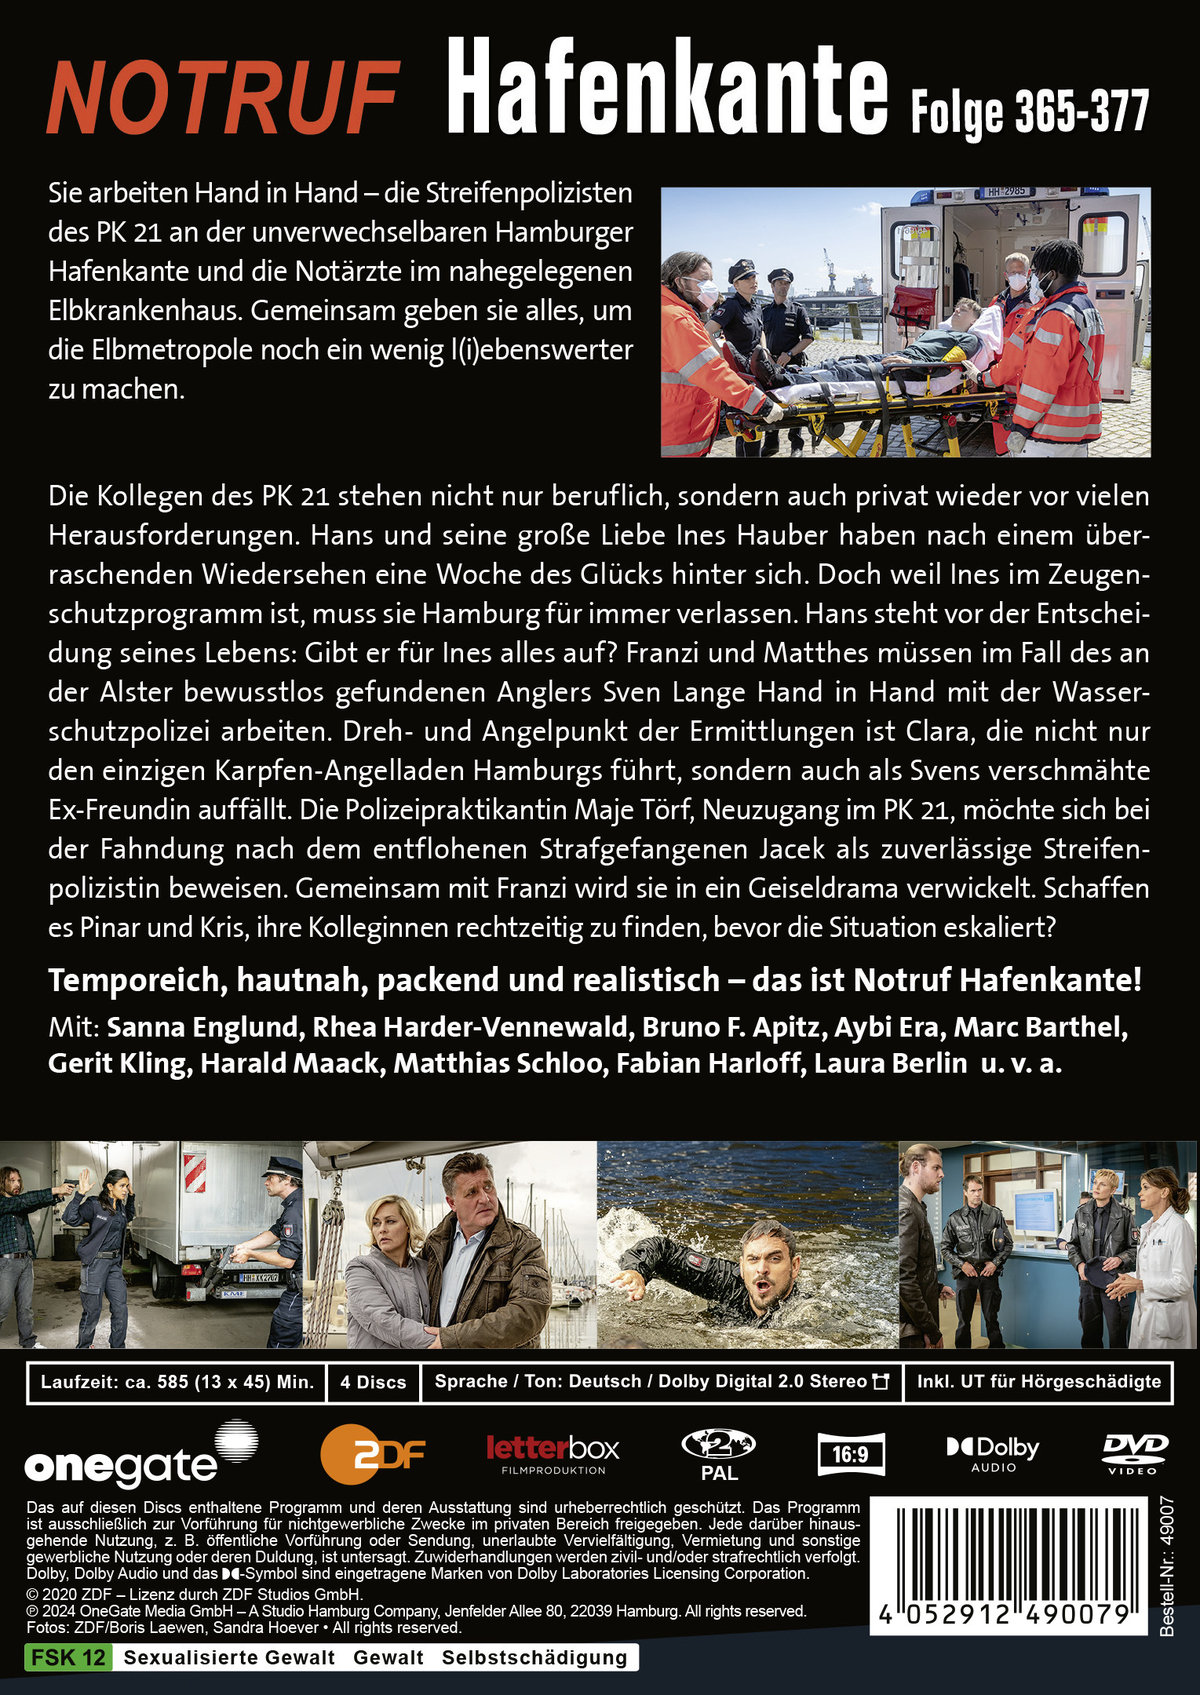 Notruf Hafenkante 29 (Folge 365-377)  [4 DVDs]  (DVD)